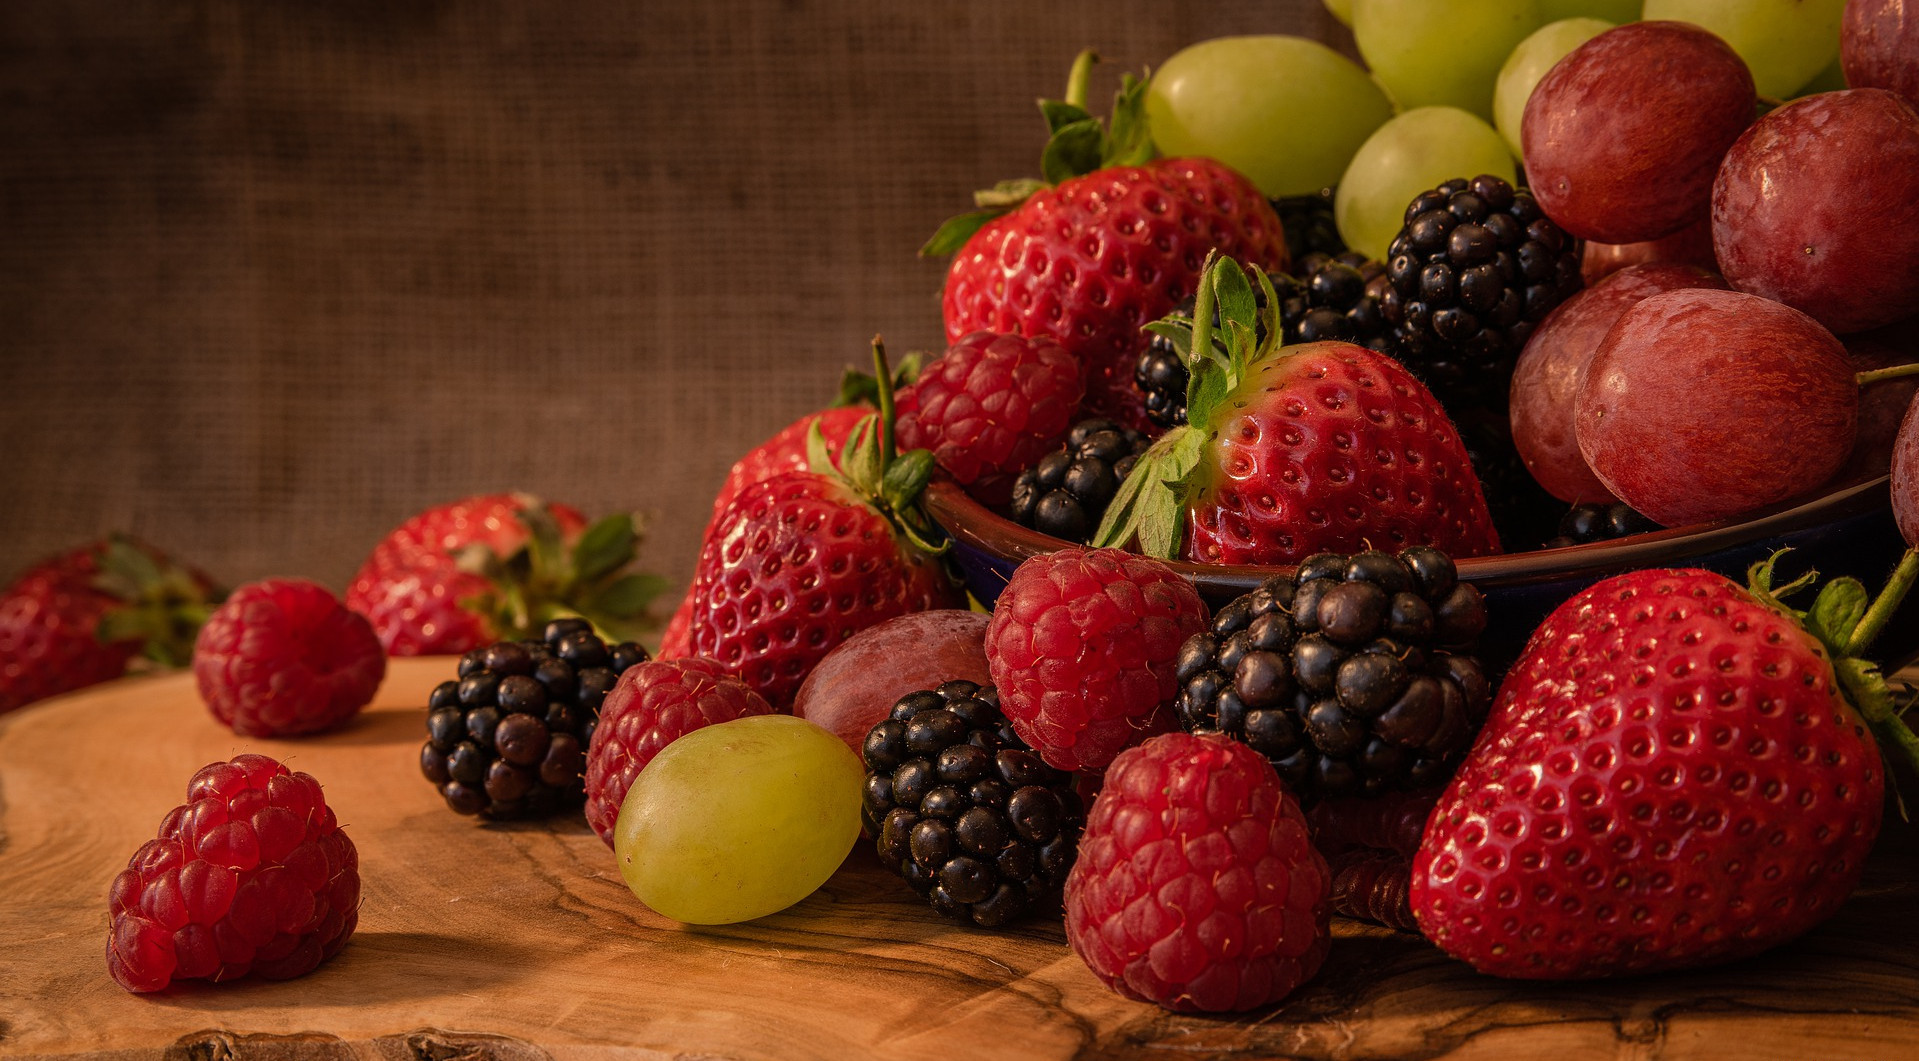 Colorful Food Fruit Berries Blackberries Strawberries Raspberries 1919x1061